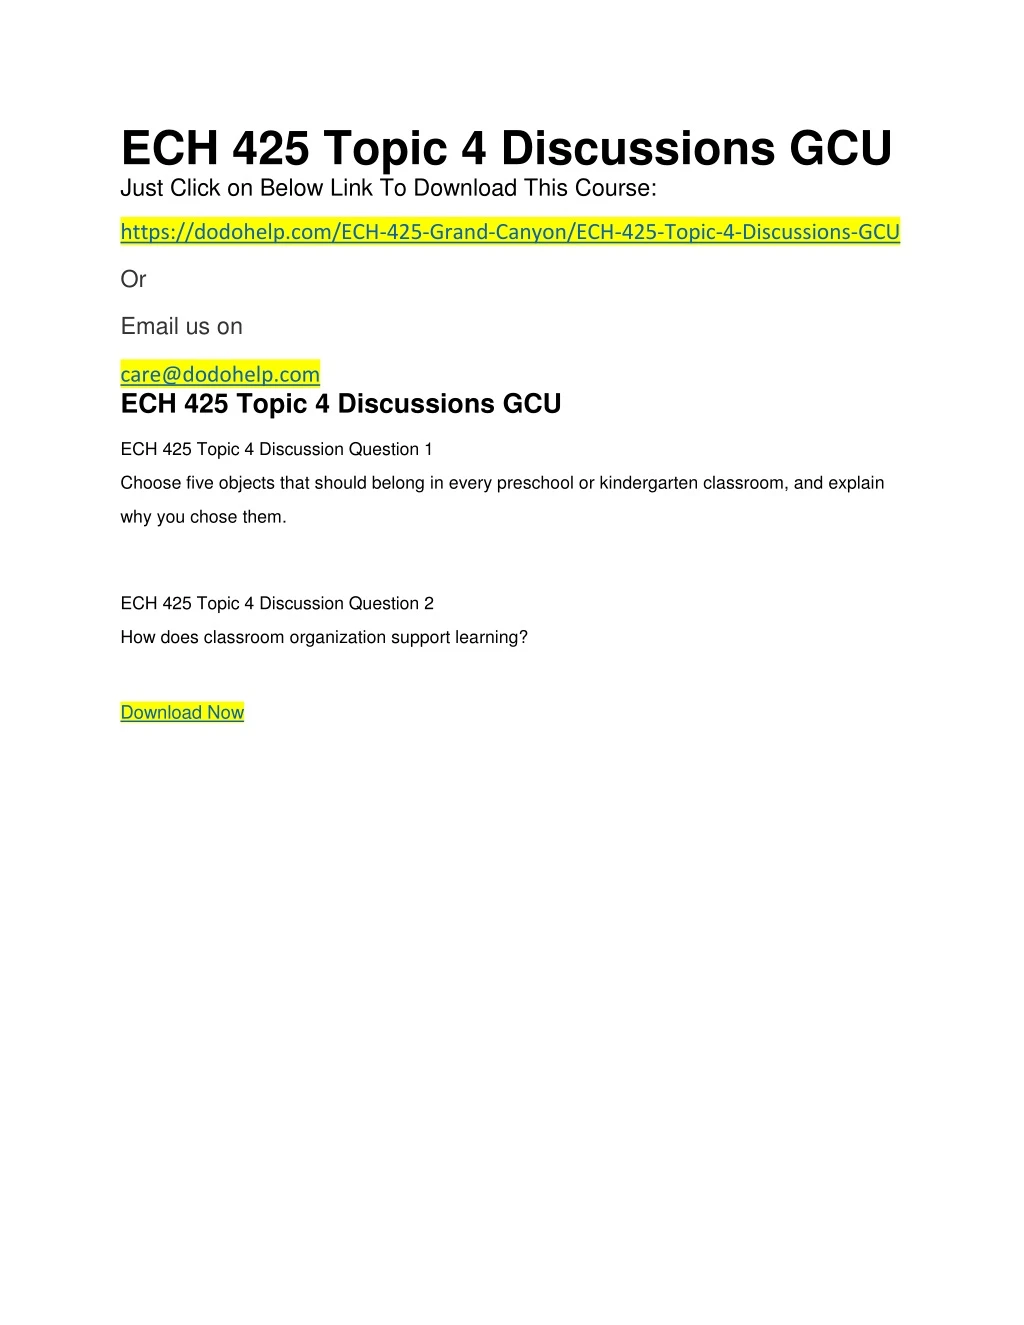 ech 425 topic 4 discussions gcu just click